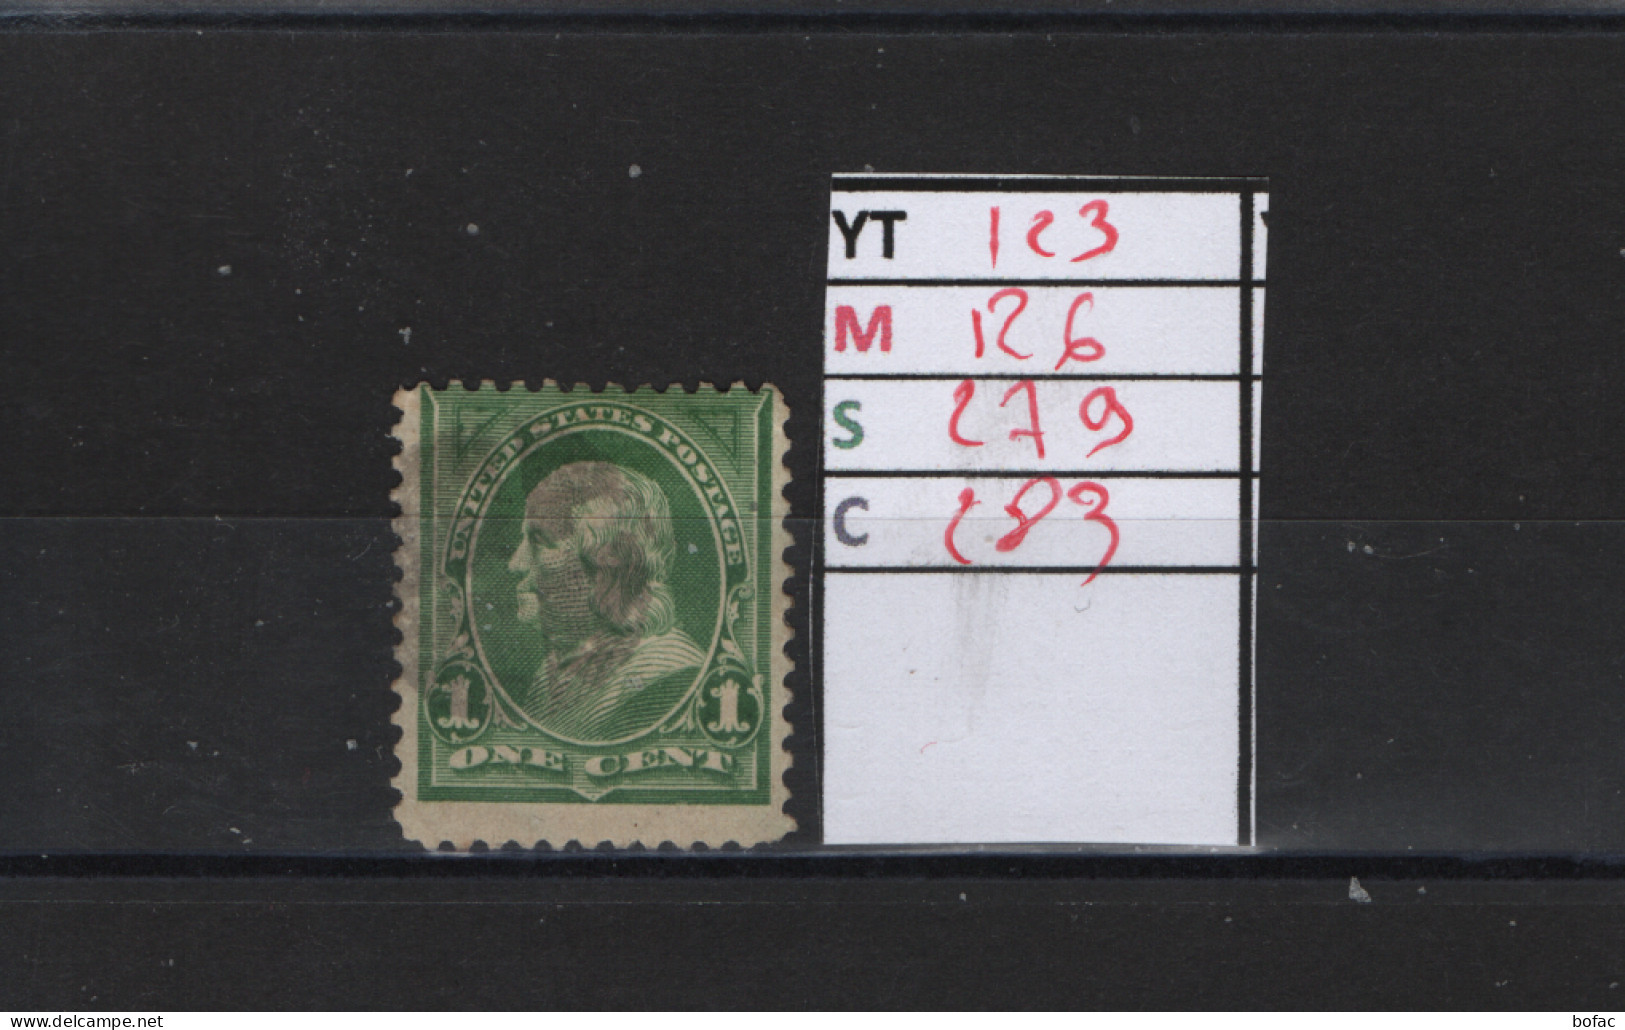 PRIX FIXE Obl  123 YT 126 MIC 279 SCOT 283 GIB Benjamin Franklin 1898 1899 1895   Etats Unis 58/04 - Used Stamps